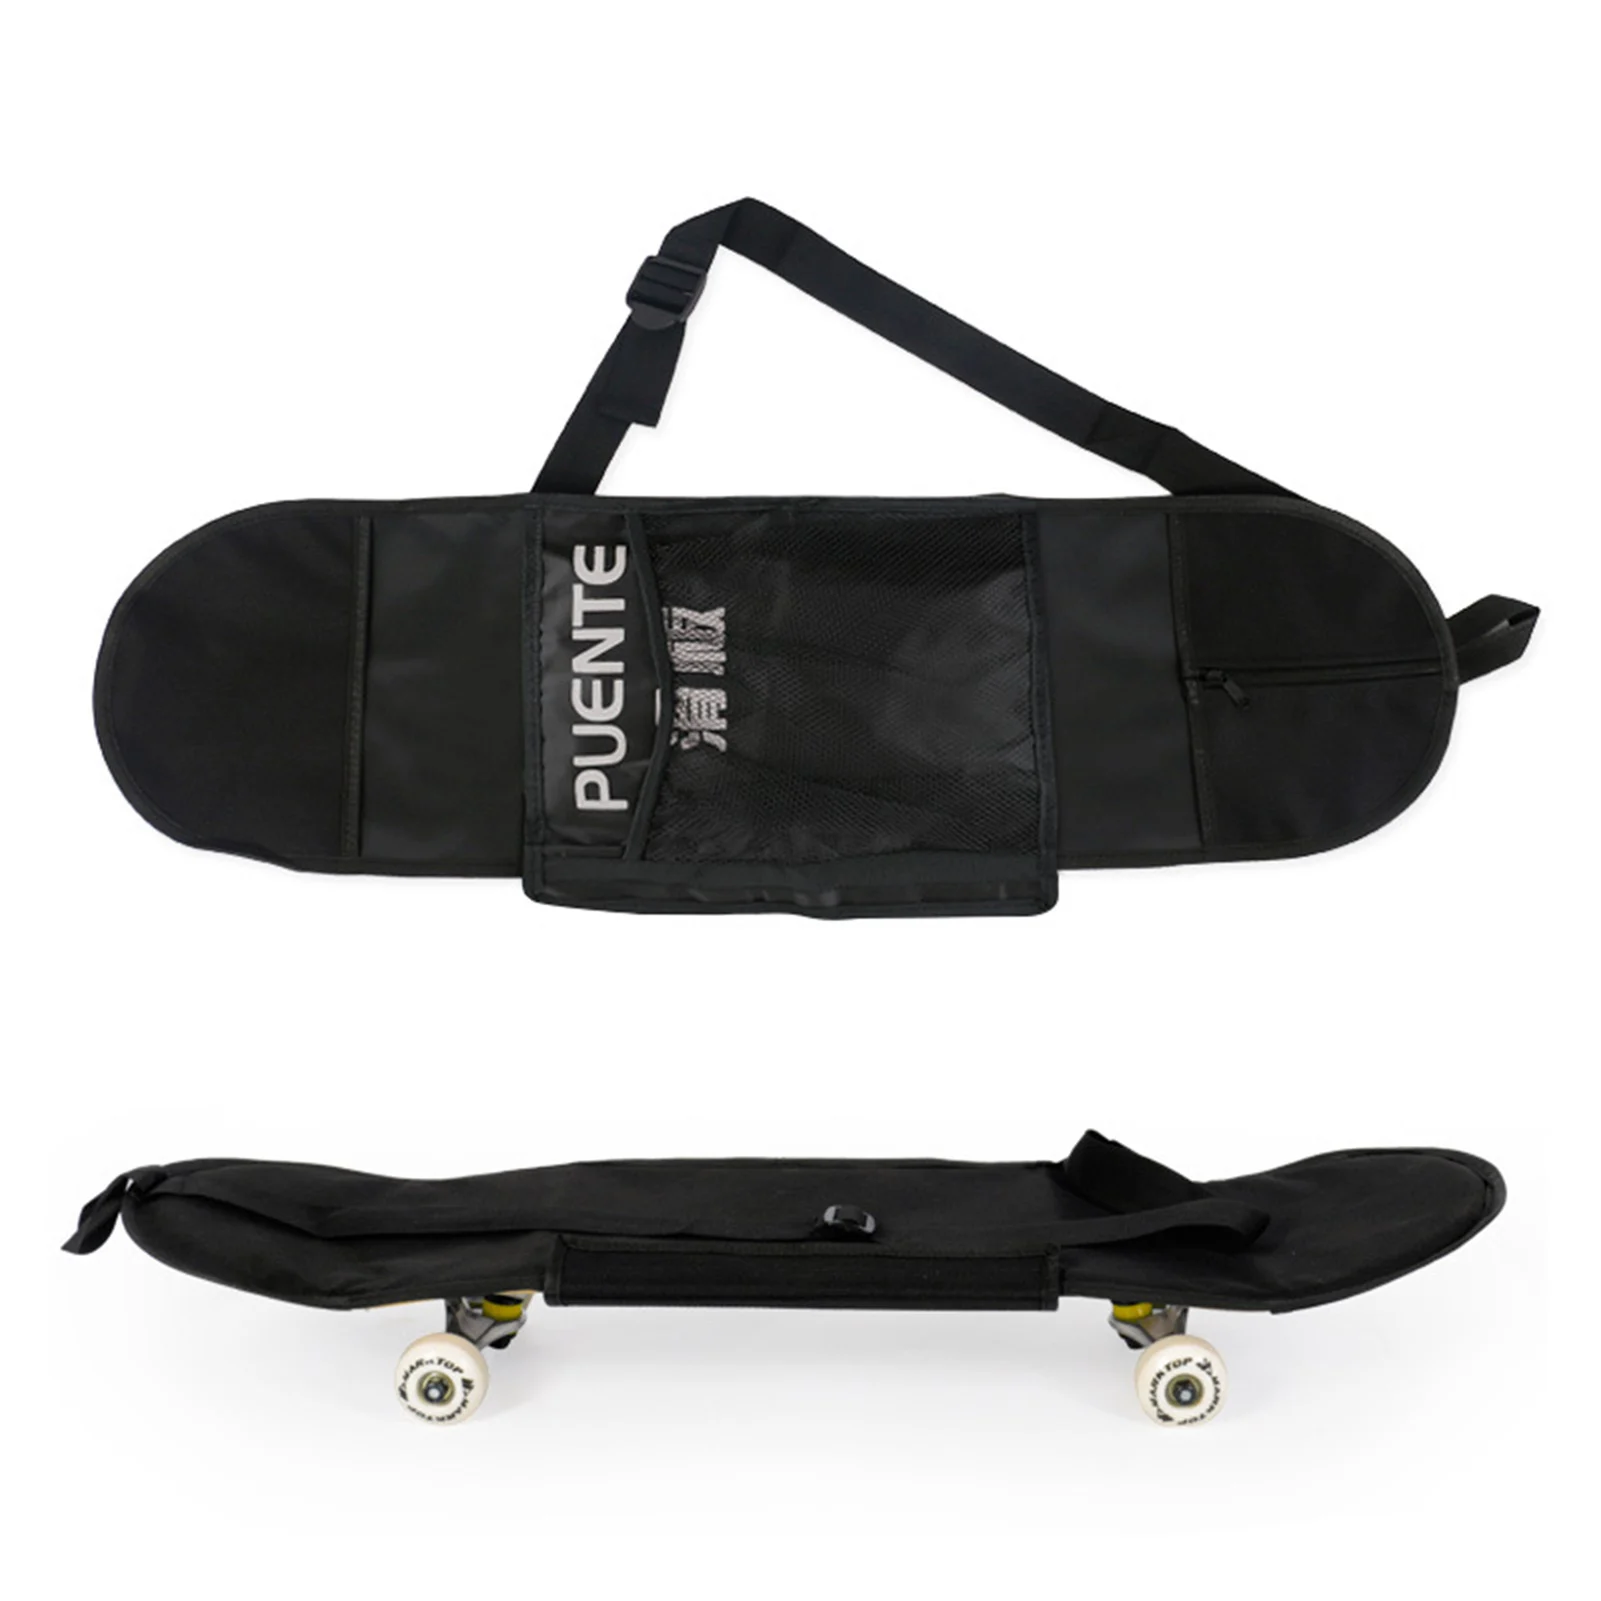 

Skateboard Carry Bag Carrying Handbag Shoulder Skate Board Storage Cover For 31 And 32 Inch Standard Skateboards Cosy